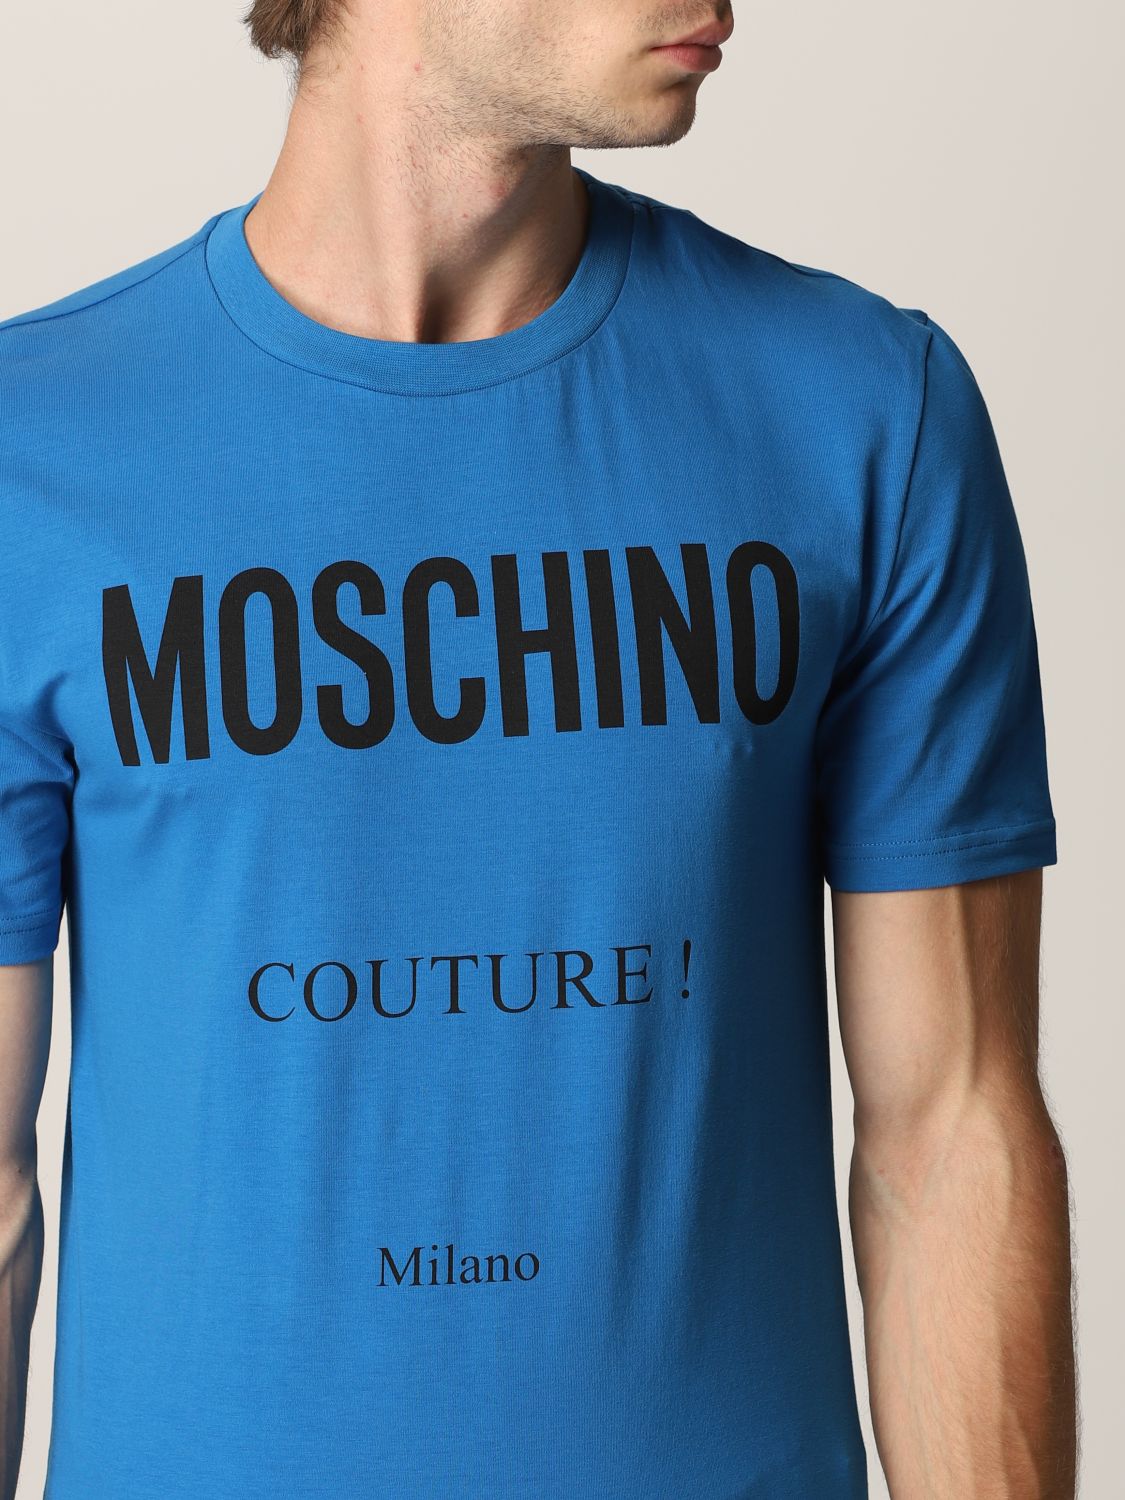 MOSCHINO COUTURE: T-shirt men | T-Shirt Moschino Couture Men Blue | T ...